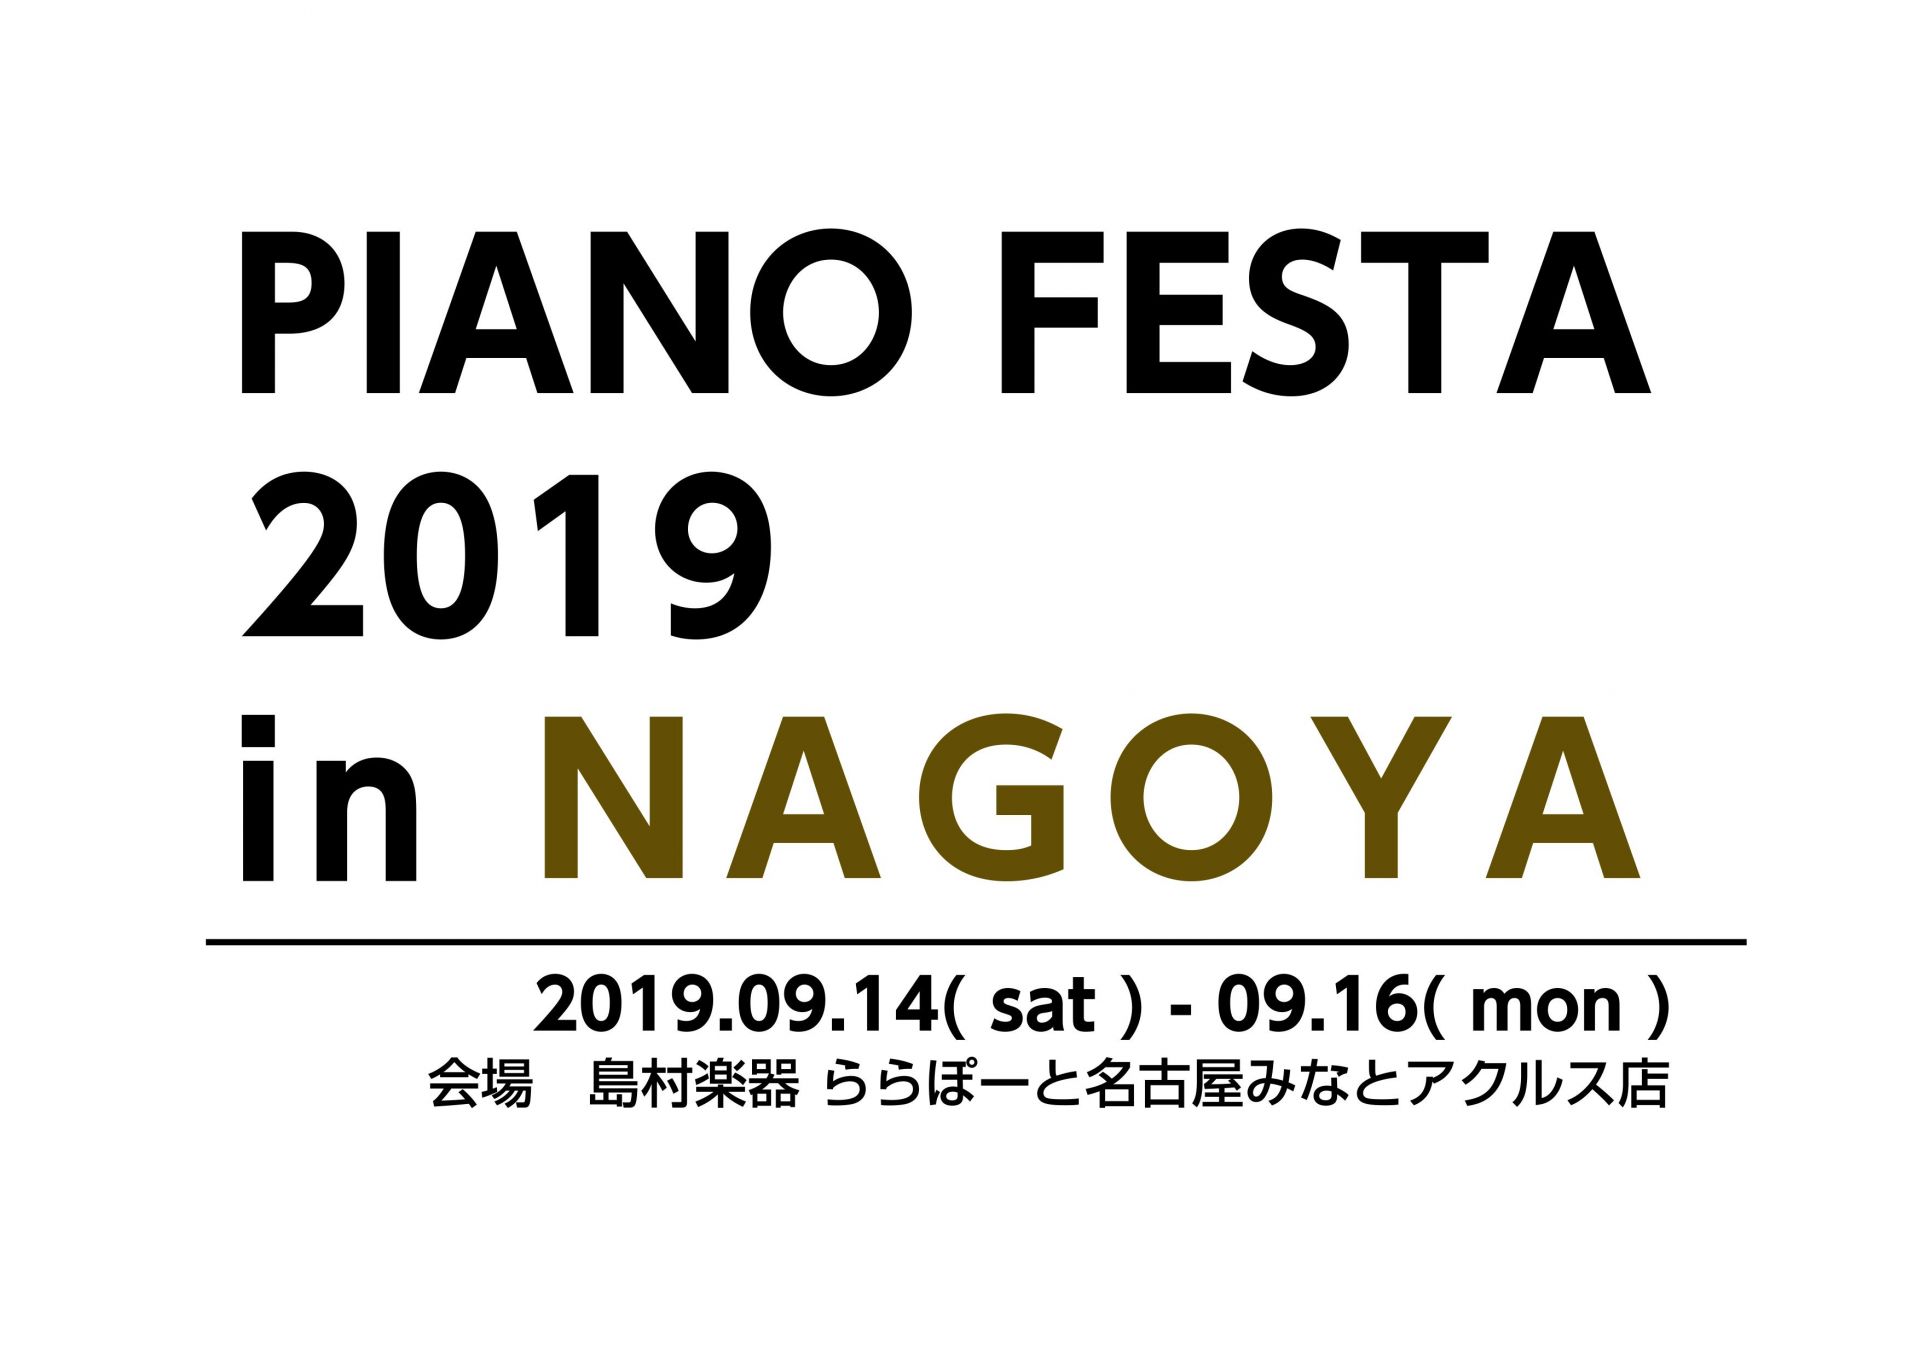 【終了致しました】9/14-9/16ピアノ合同展示会】PIANO FESTA 2019 in NAGOYA（19.09.03更新）